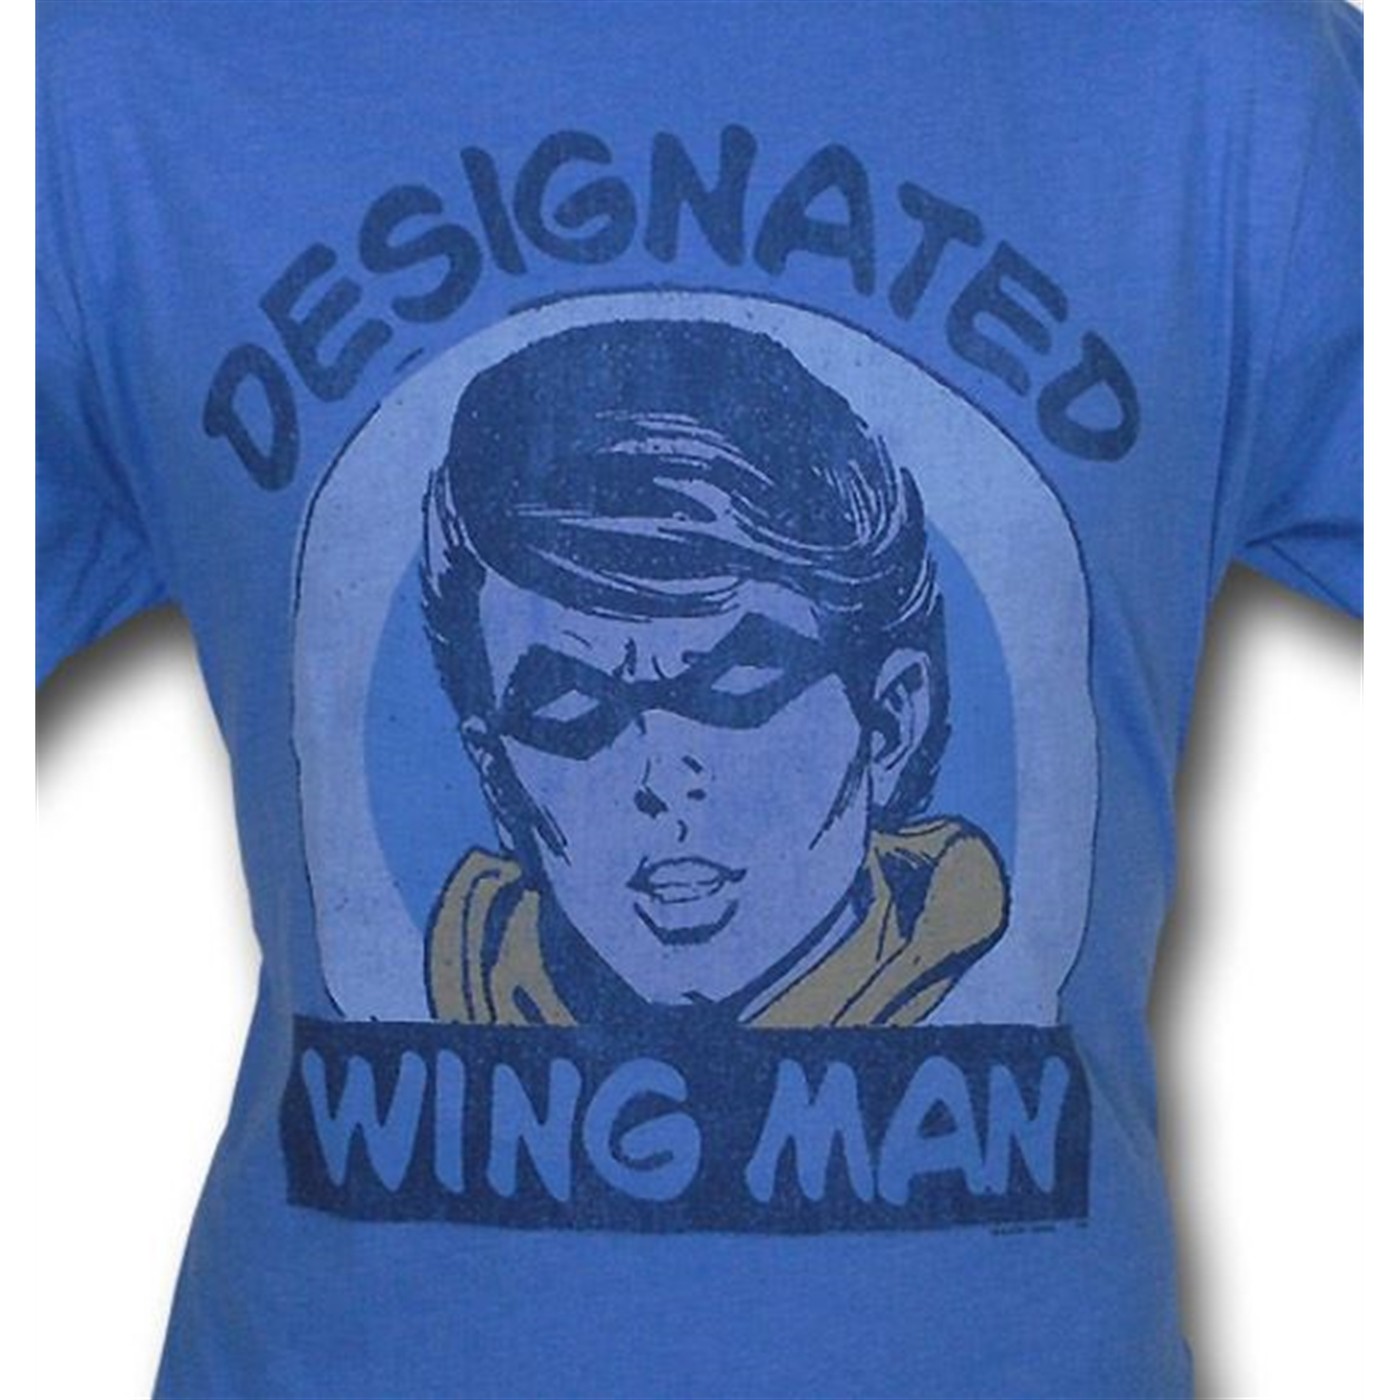 Robin Wing Man Junk Food T-Shirt